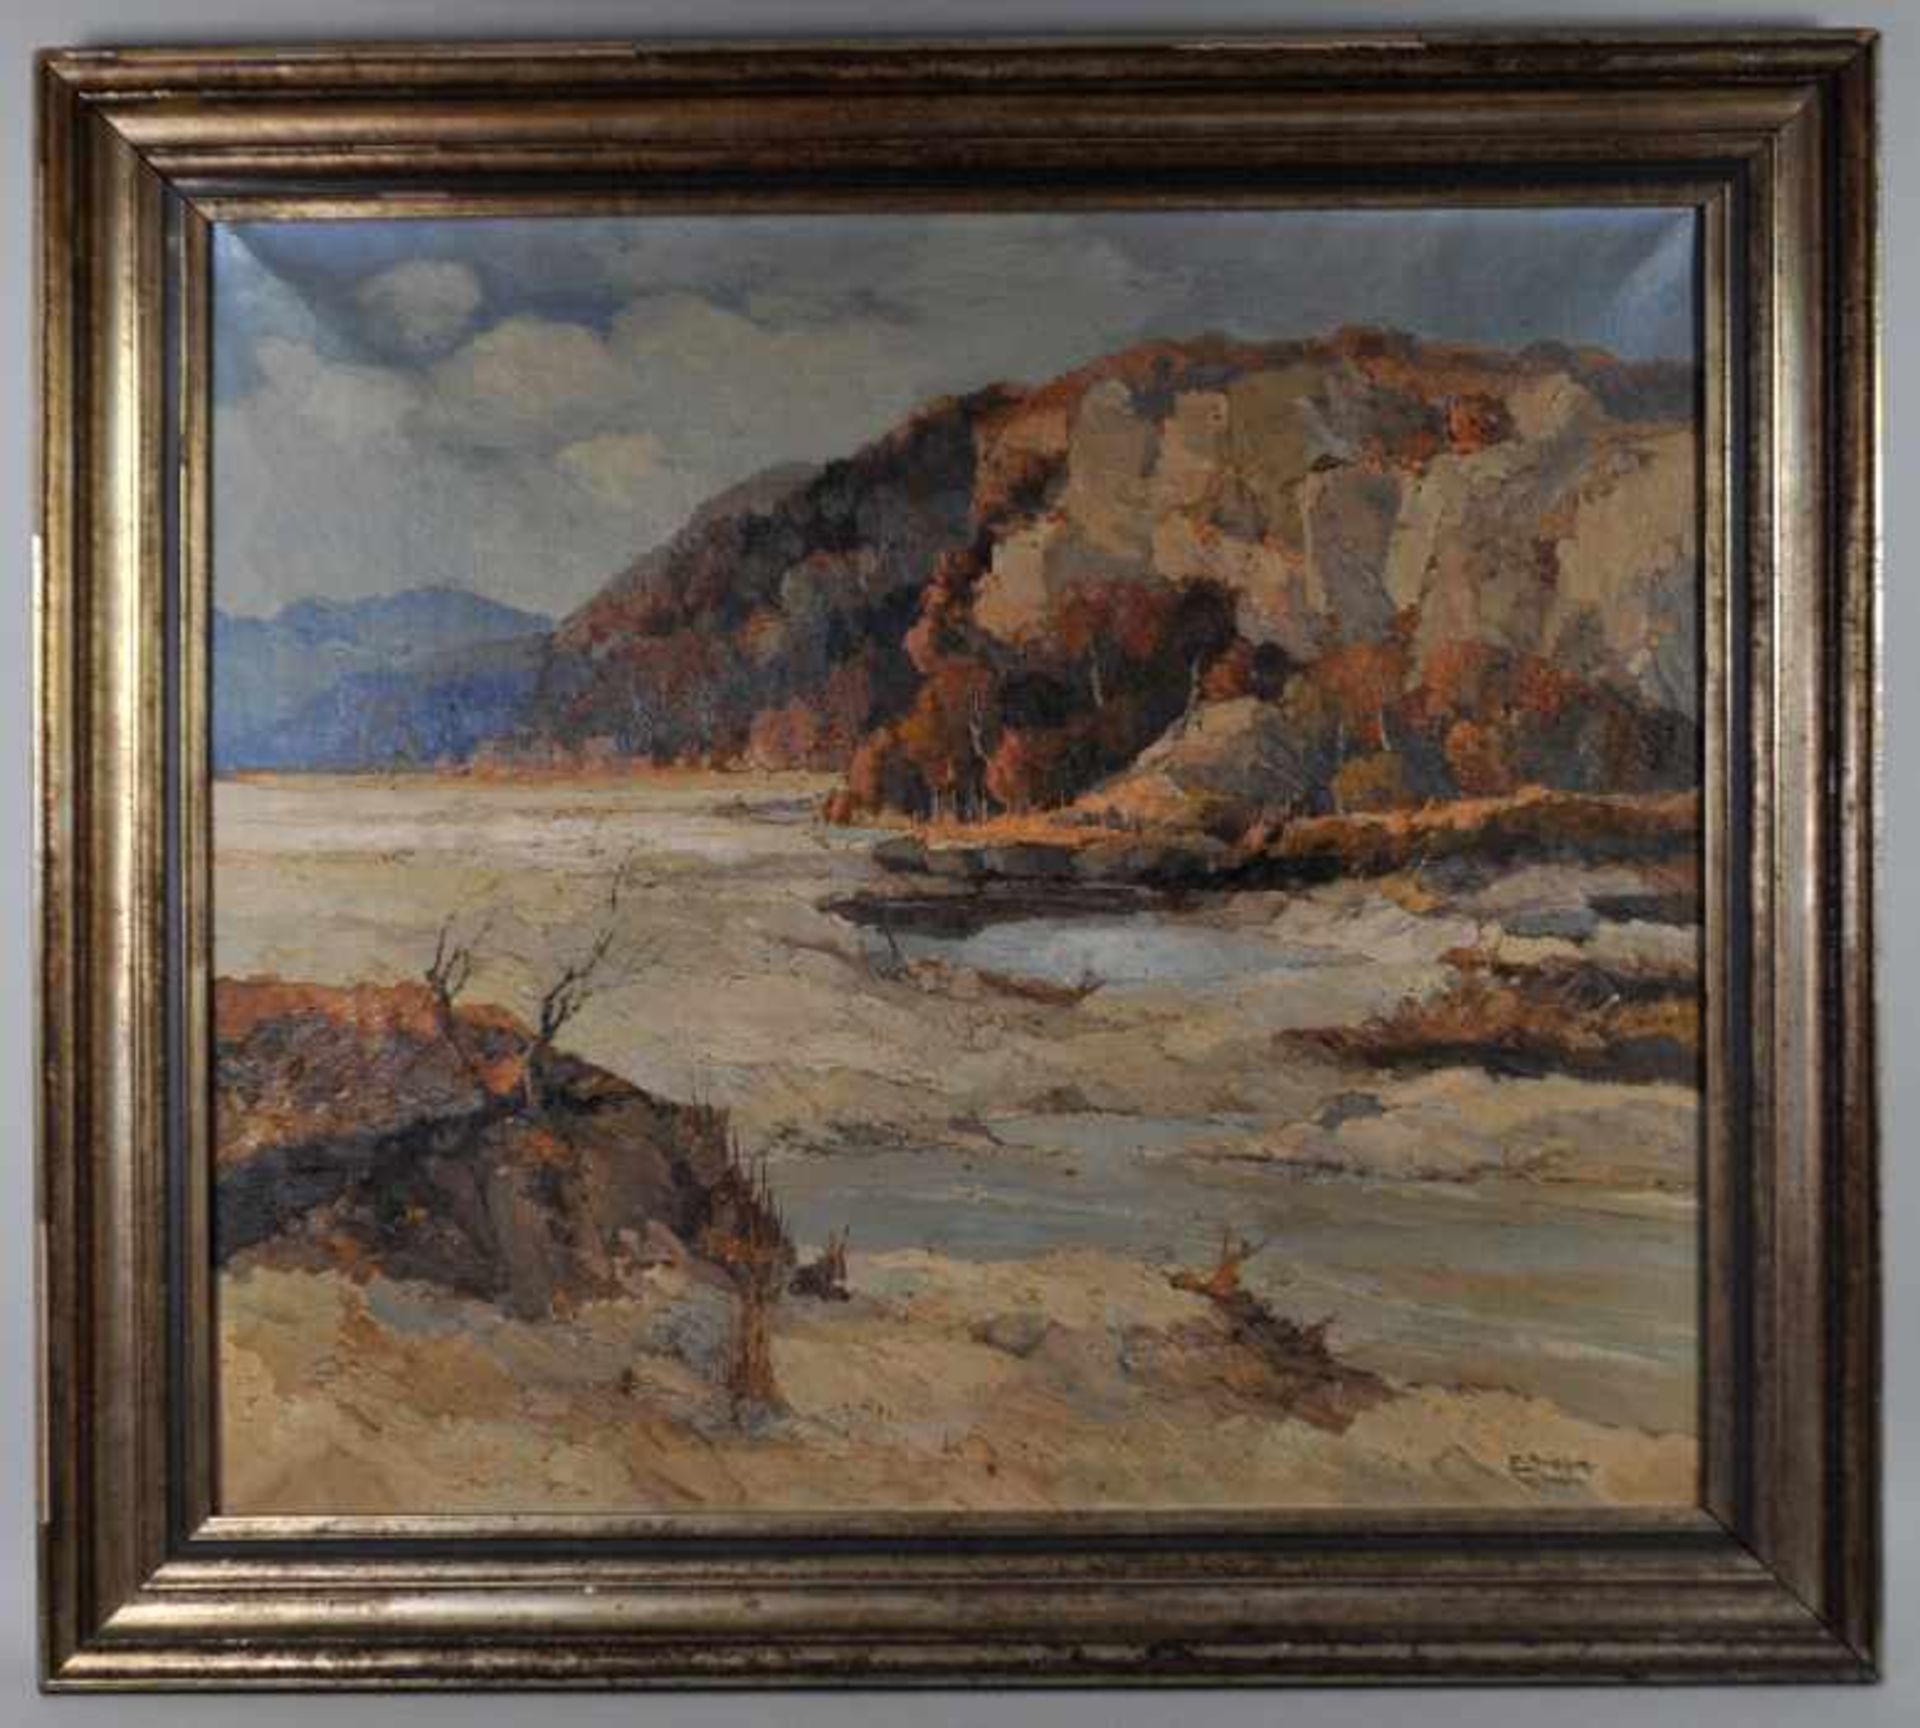 BREHM Emil (20. Jahrhundert, München) "Flusslandschaft" mit Gebirgshintergrund, Öl auf Leinwand, - Bild 2 aus 4